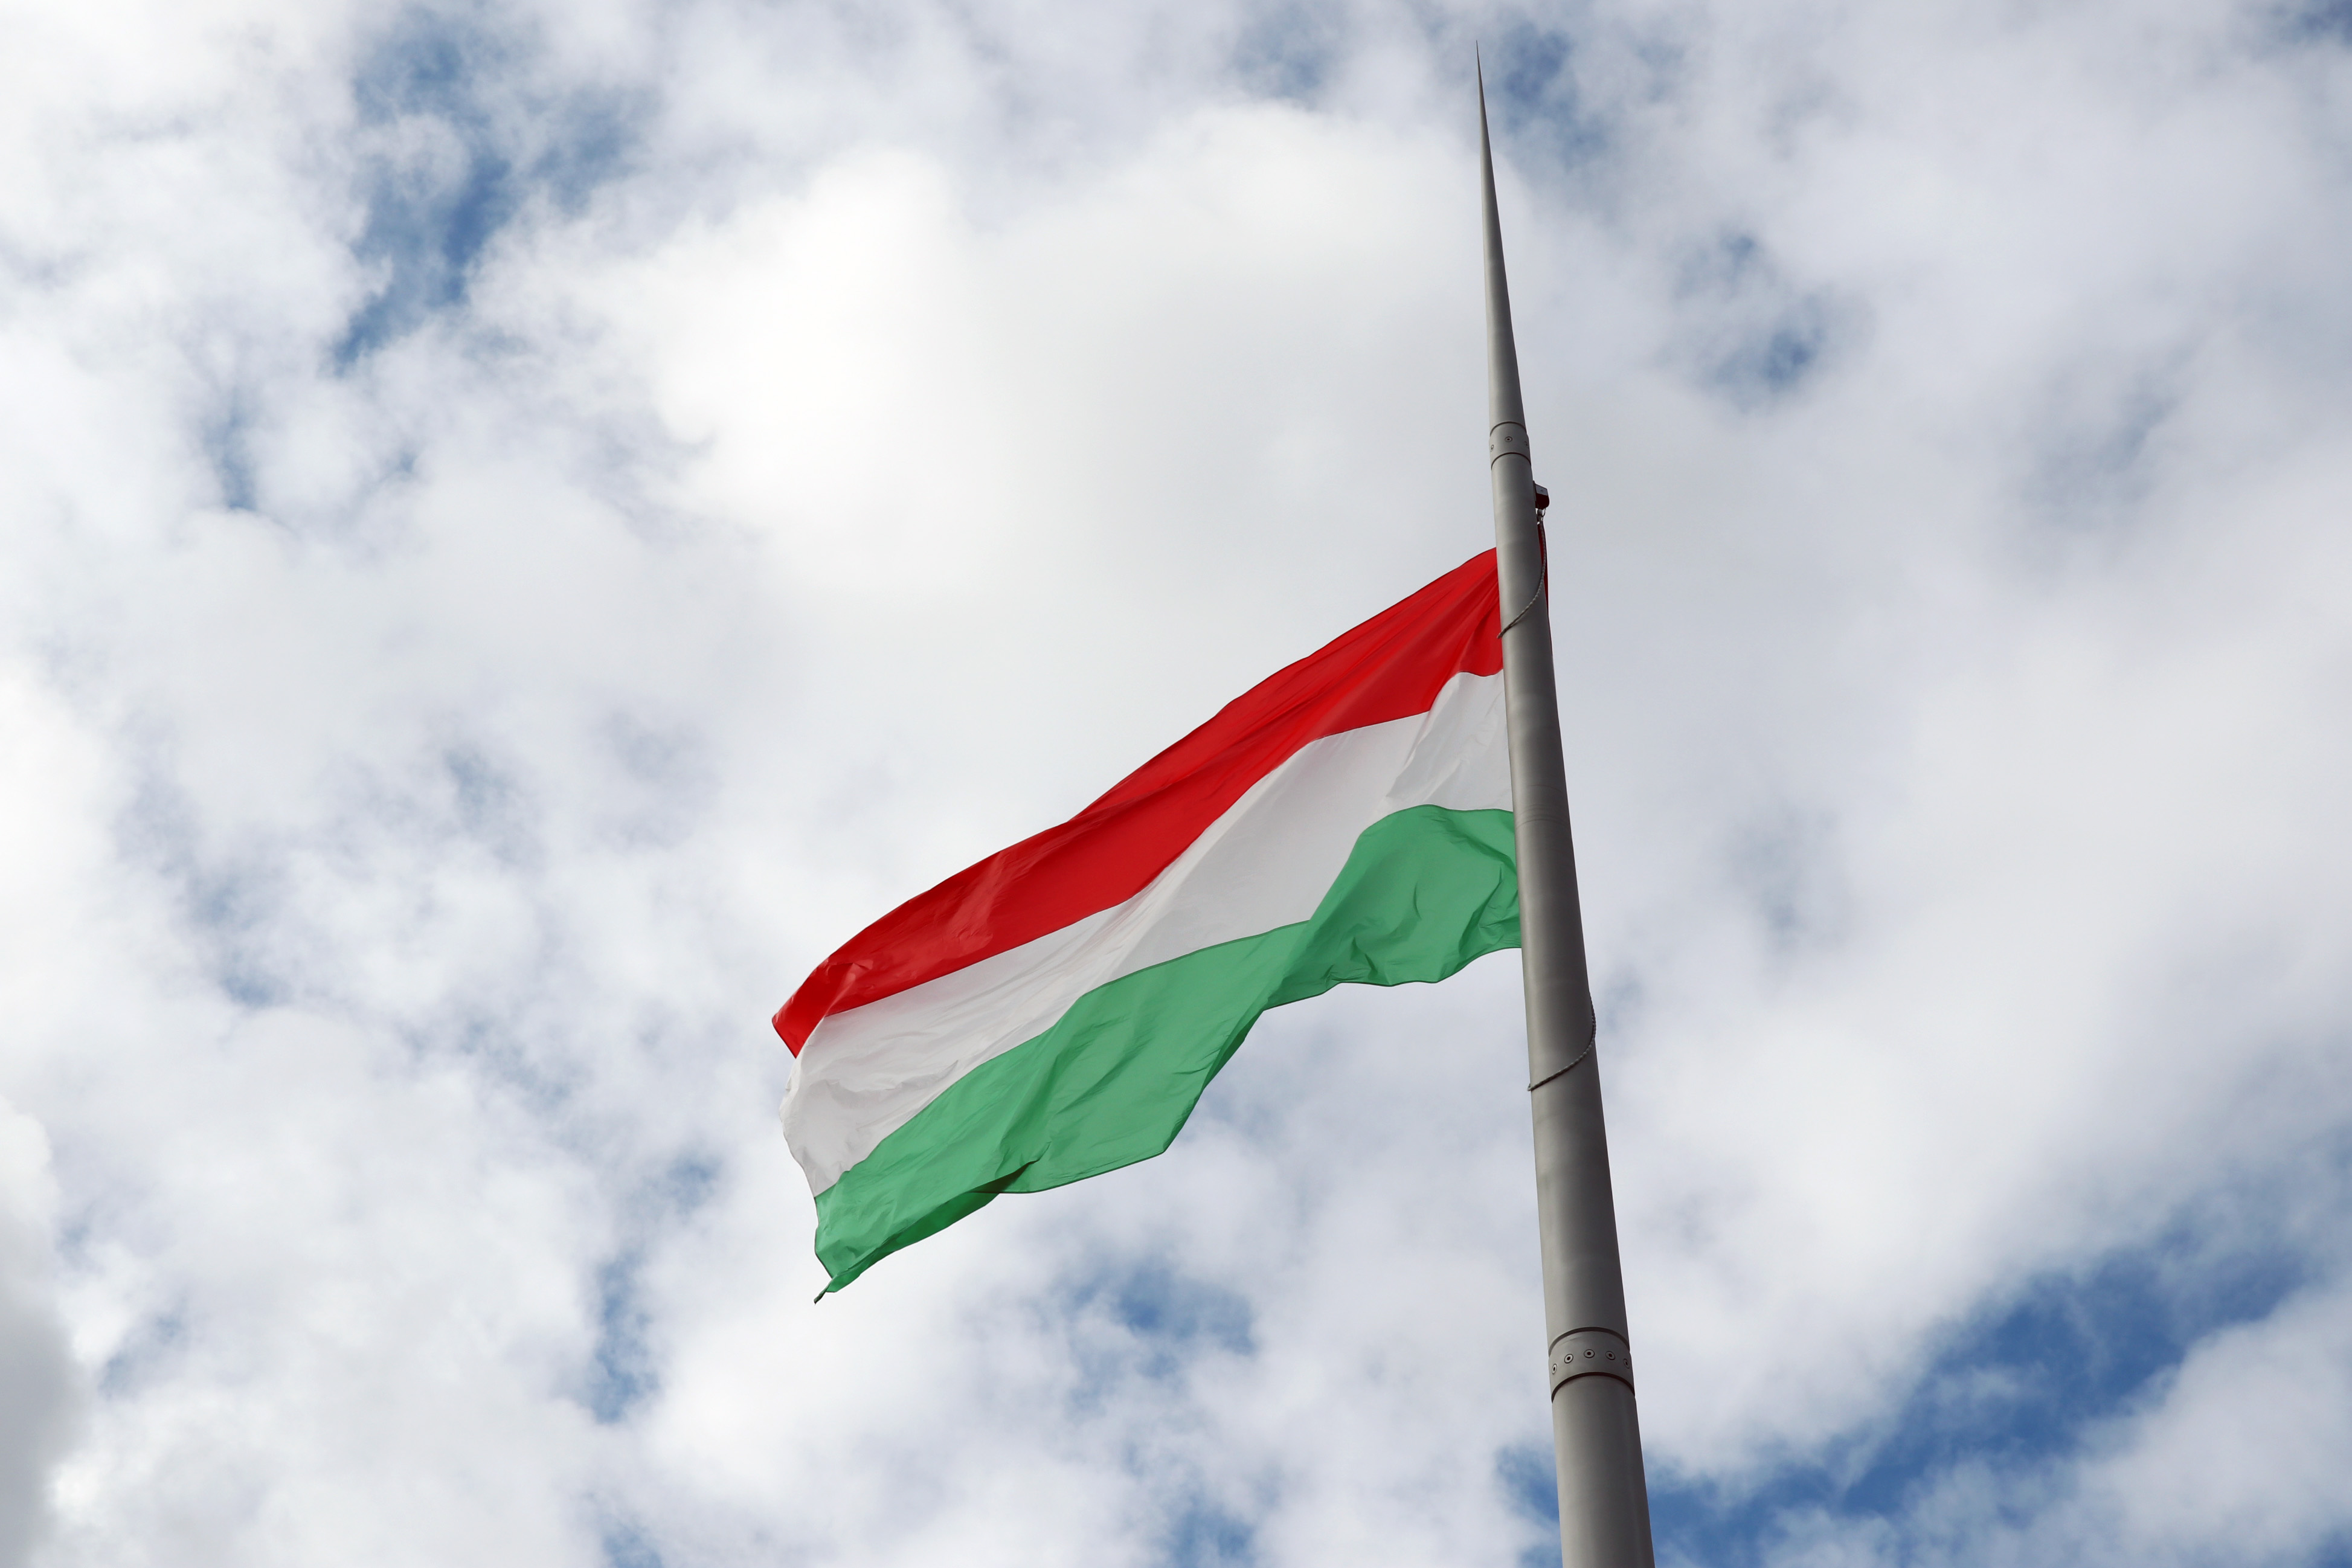 15月XNUMX日匈牙利國旗升起匈牙利國旗